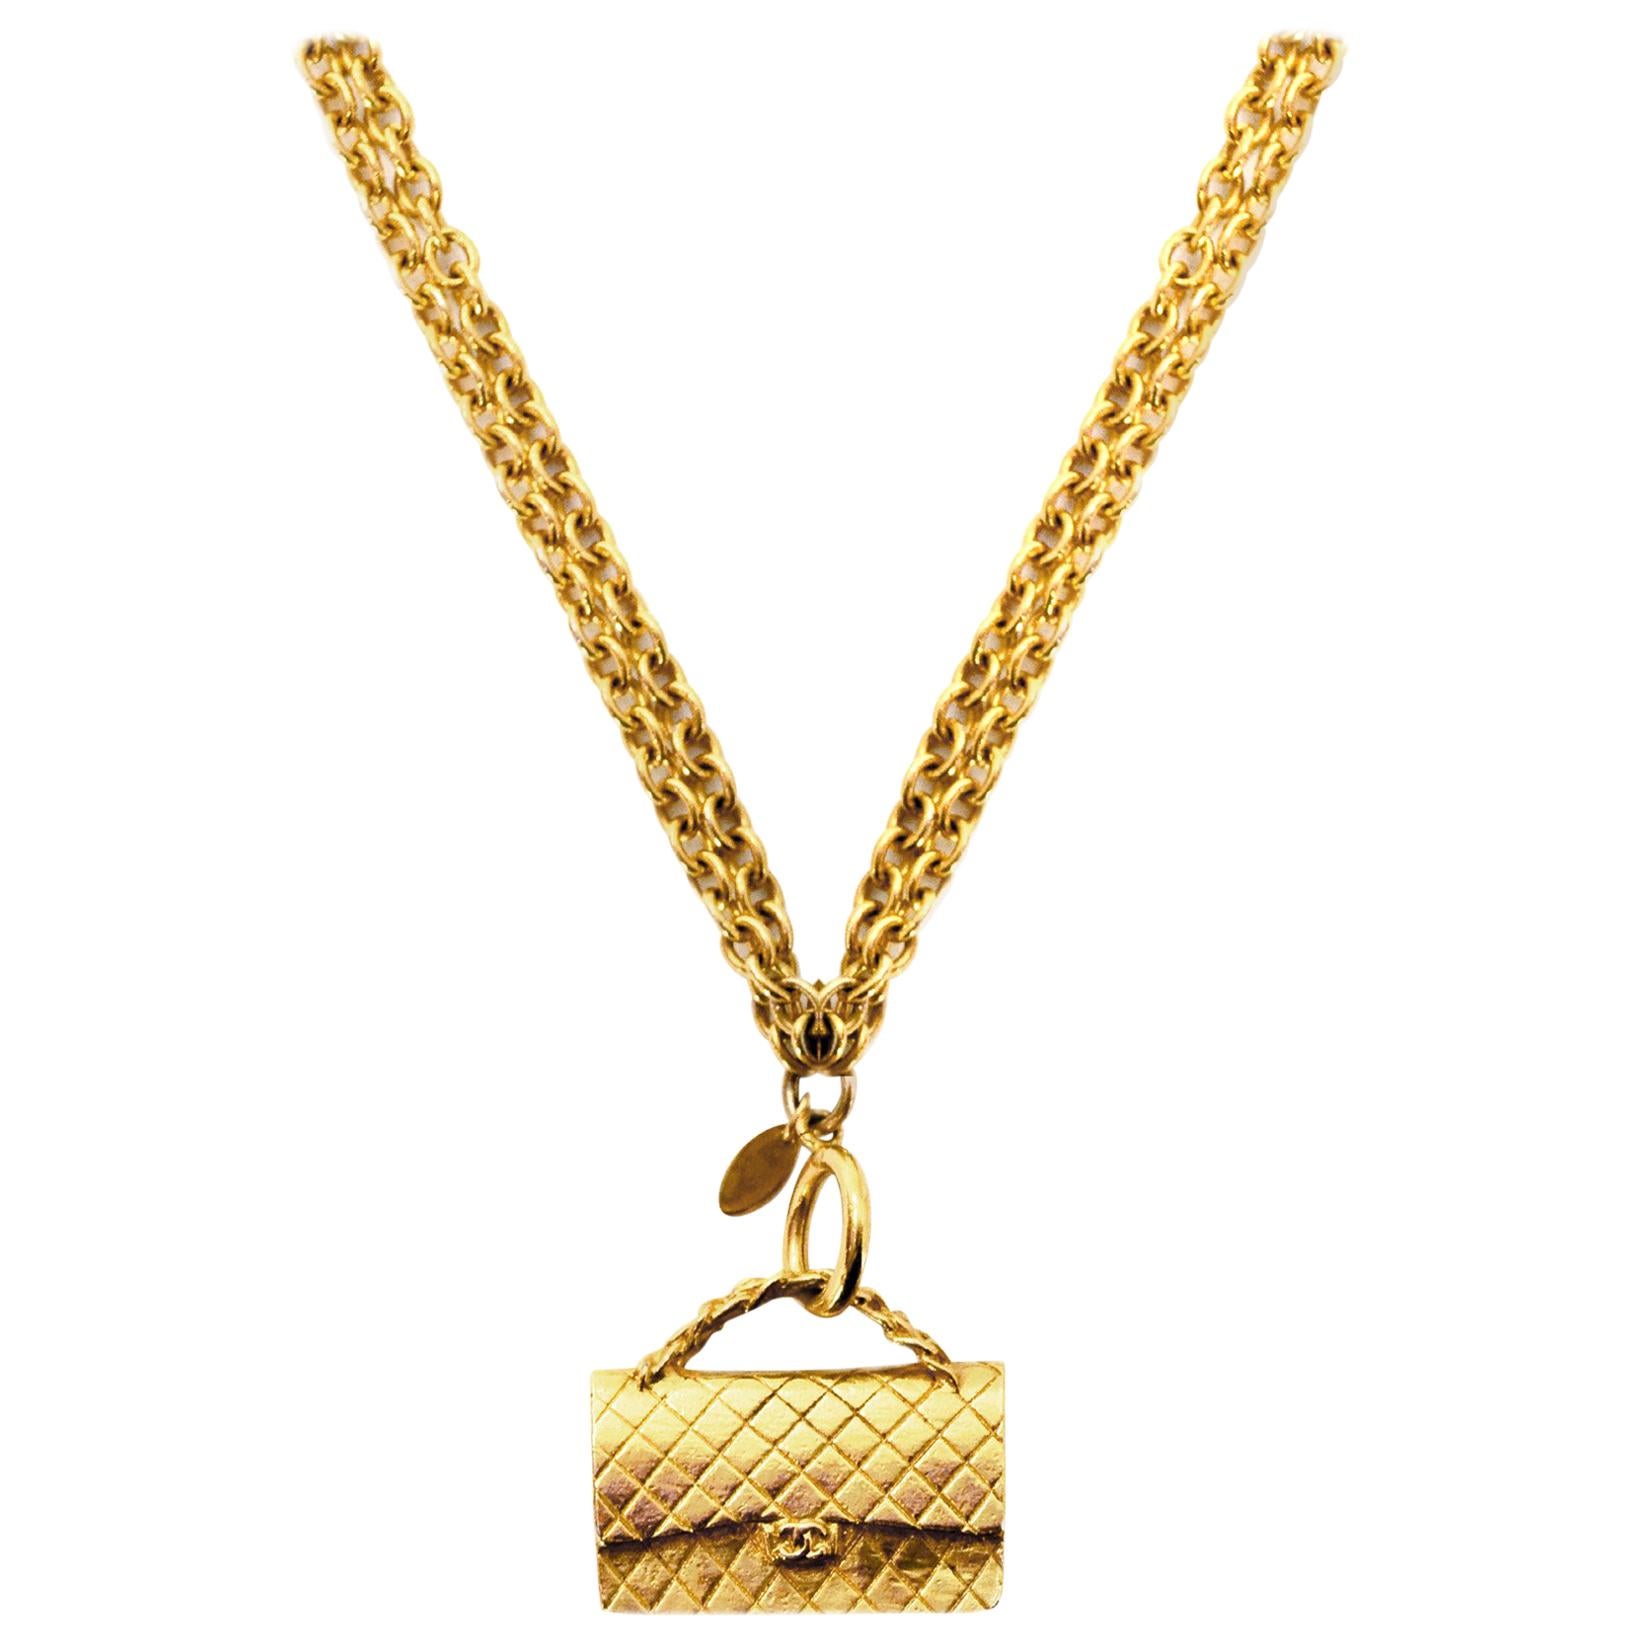 Chanel '90s Vintage Goldtone Chain-Link Necklace W/ Flap Bag Pendant